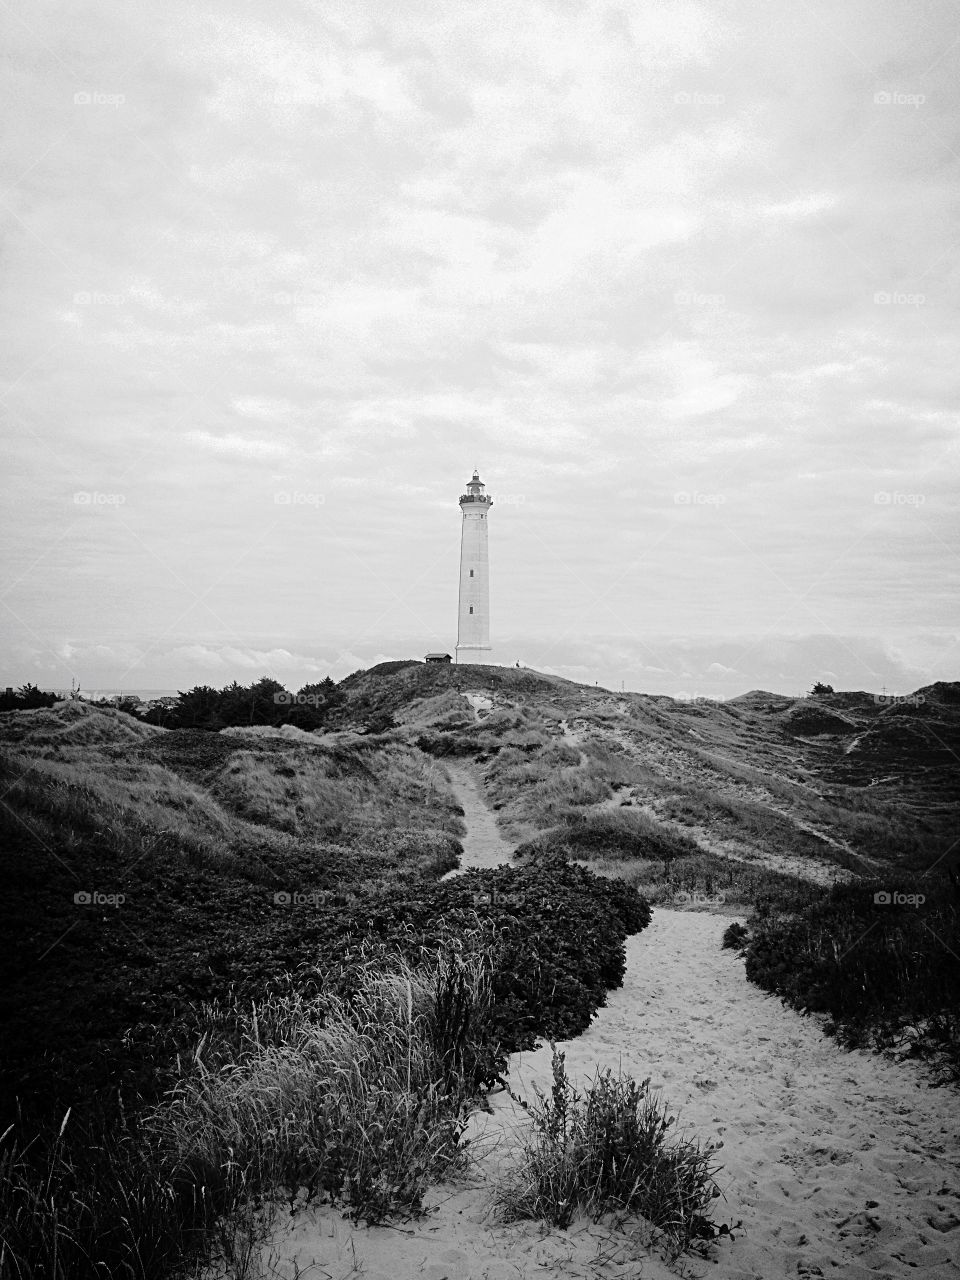 Hvidesande lighthouse